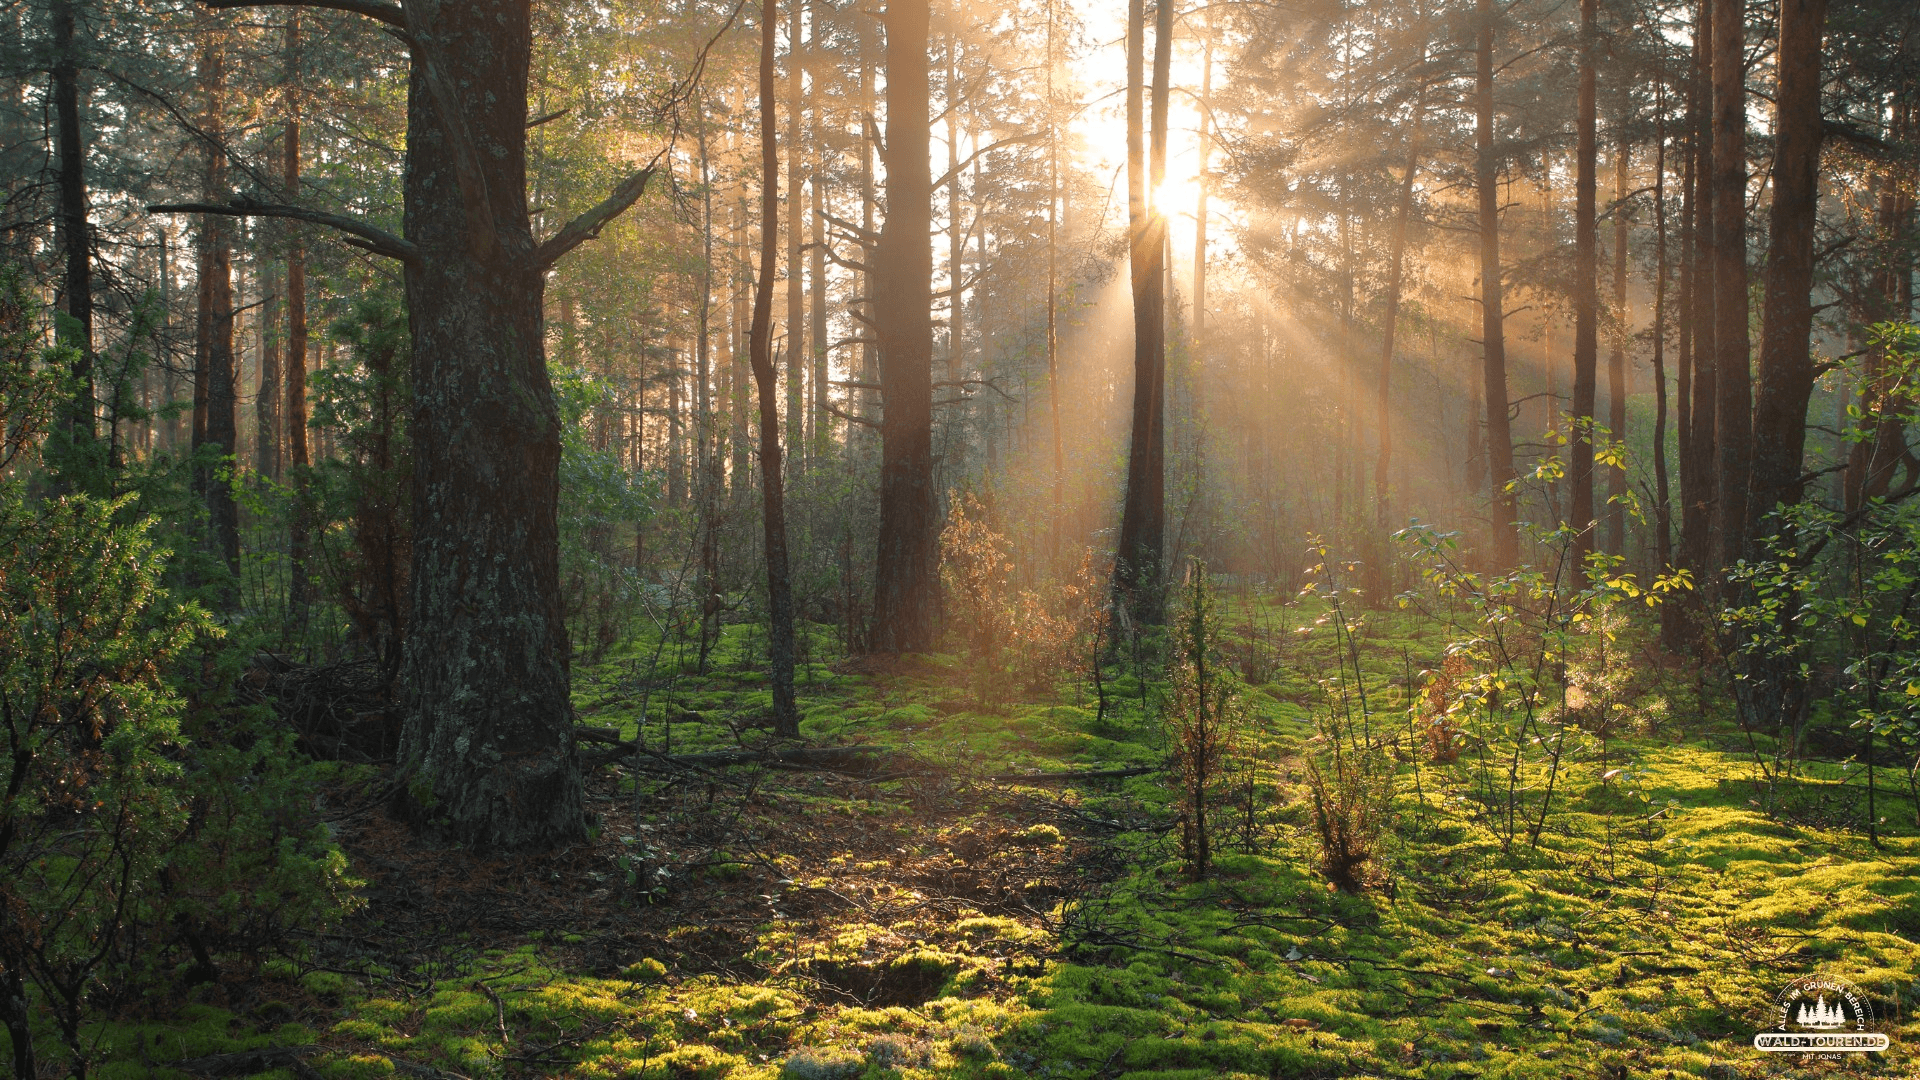 Sonnenlicht fällt in einem Wald durch die Bäume